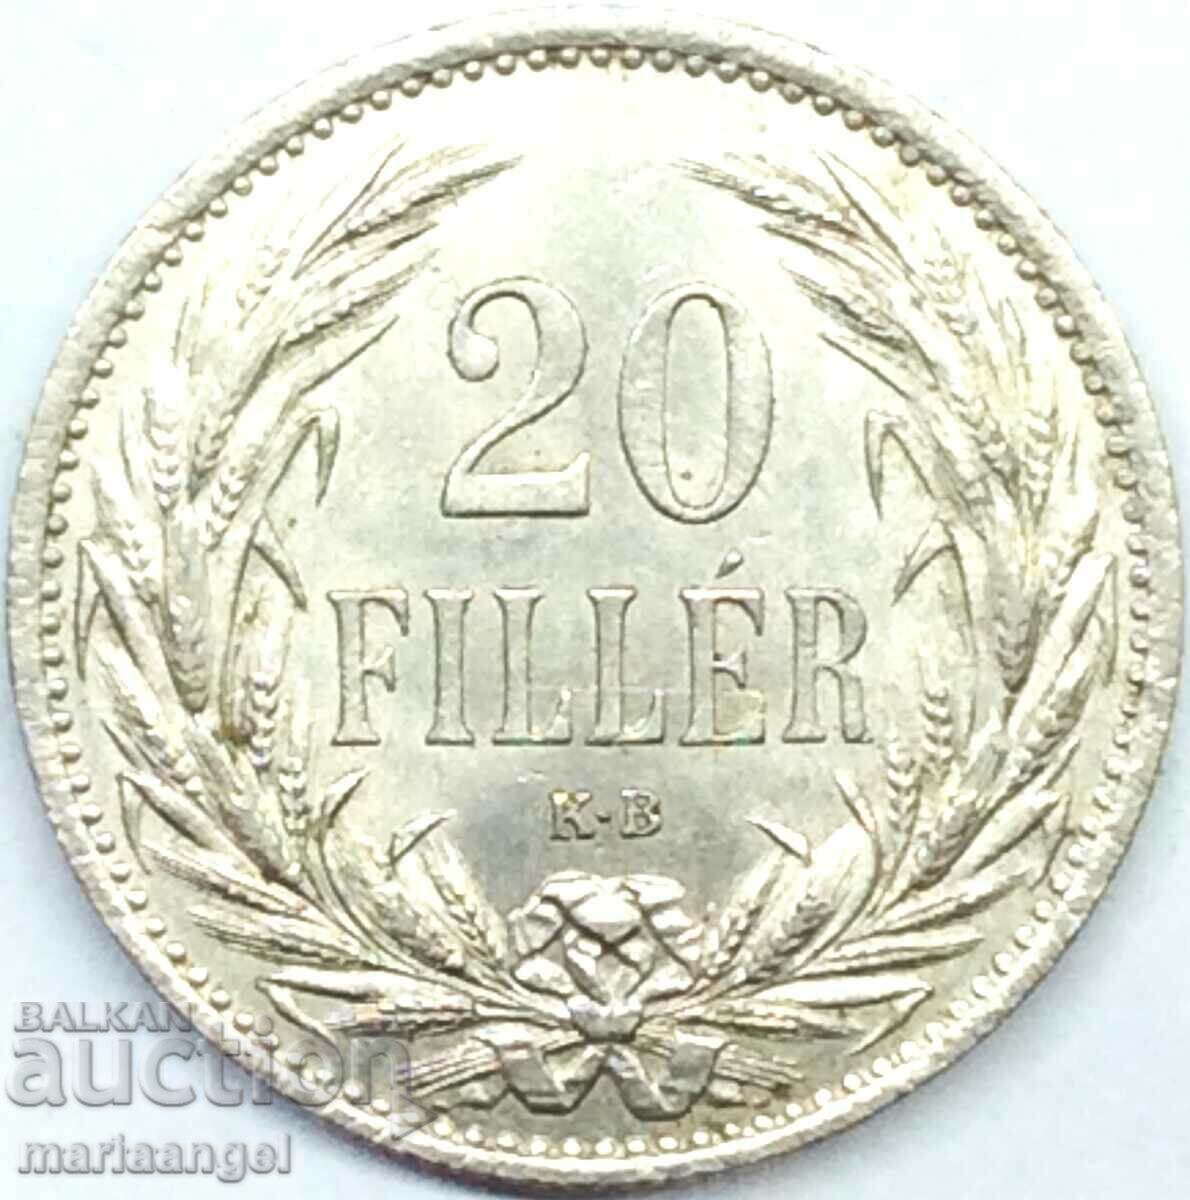 Hungary 1914 20 filler UNC - quite rare